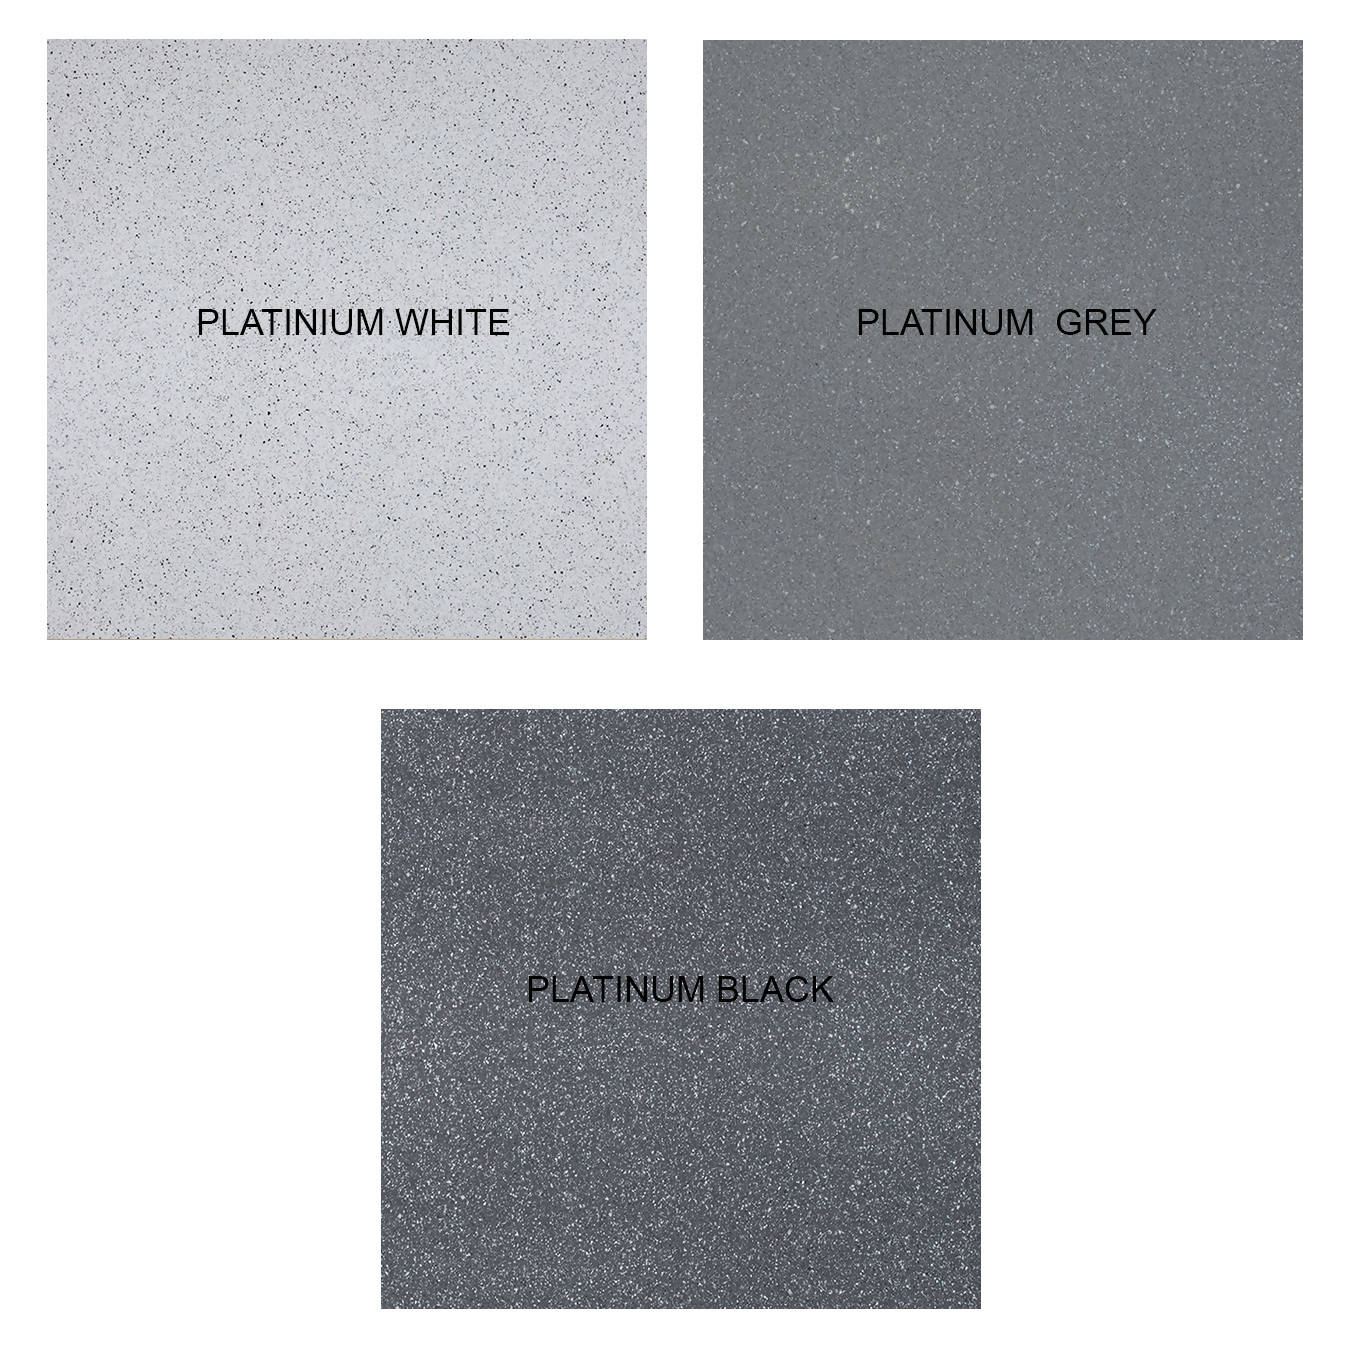 PLATINUM WHITE QUARTZ,Quartz,Artemi,www.work-tops.com